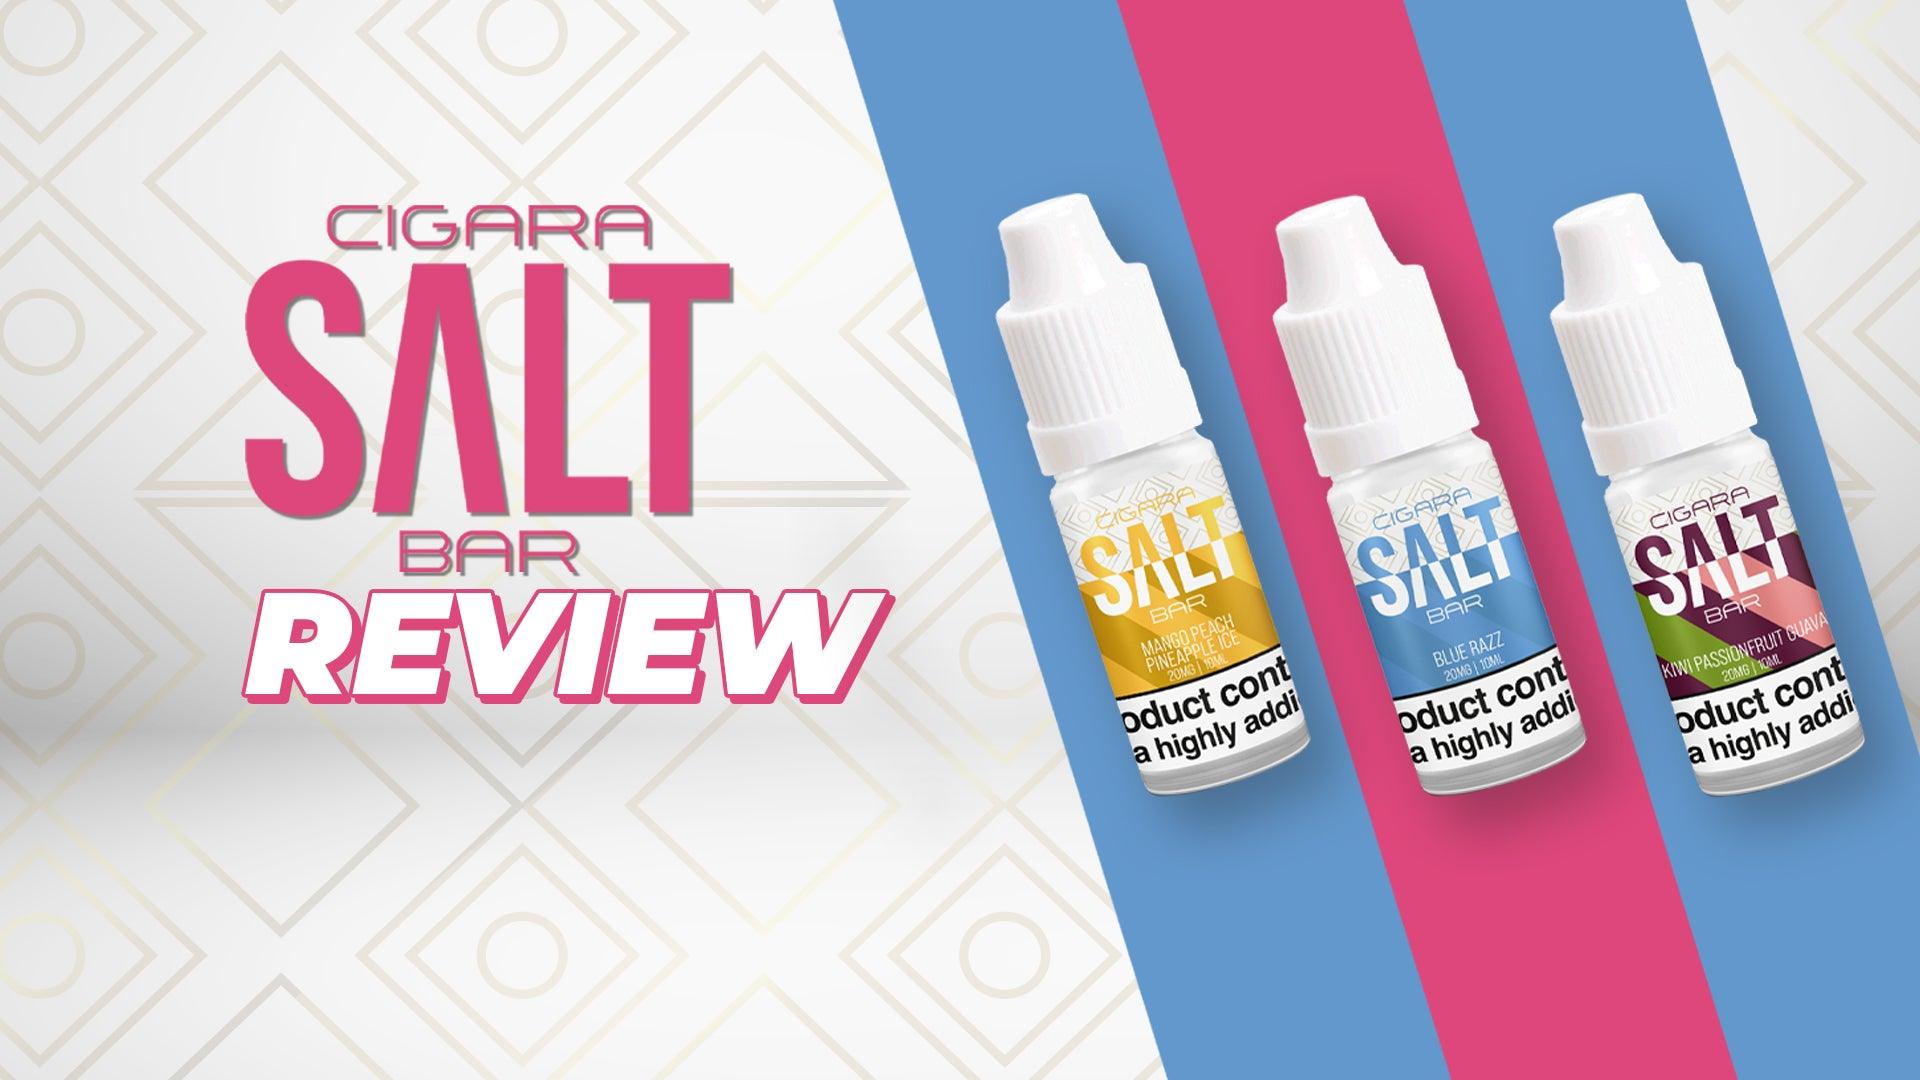 Cigara Salt Bar Review - Brand:Cigara Salt Bar, Category:E-Liquids, Sub Category:Nicotine Salts